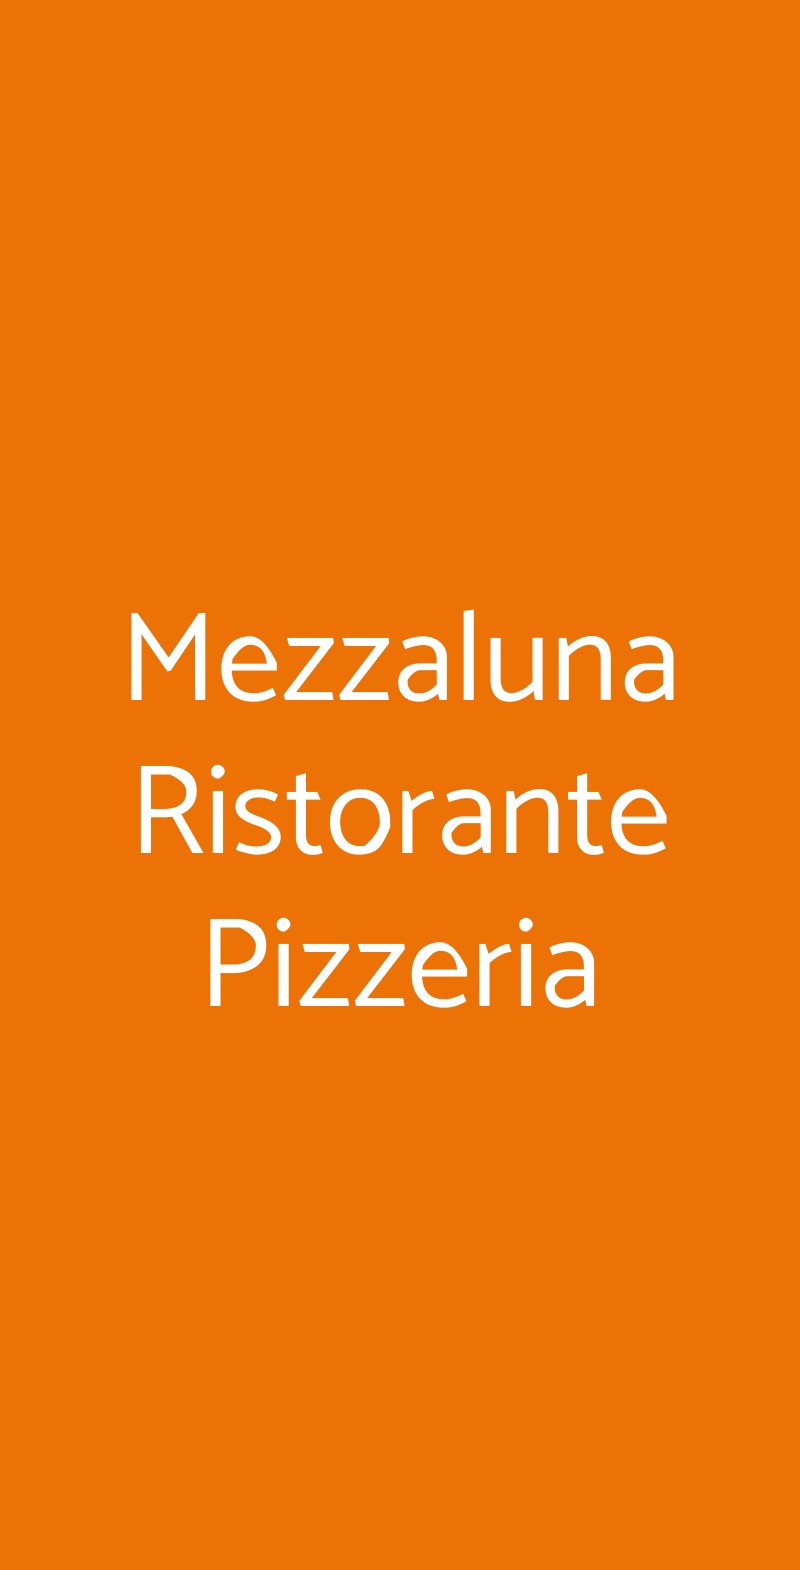 Mezzaluna Ristorante Pizzeria Milano menù 1 pagina